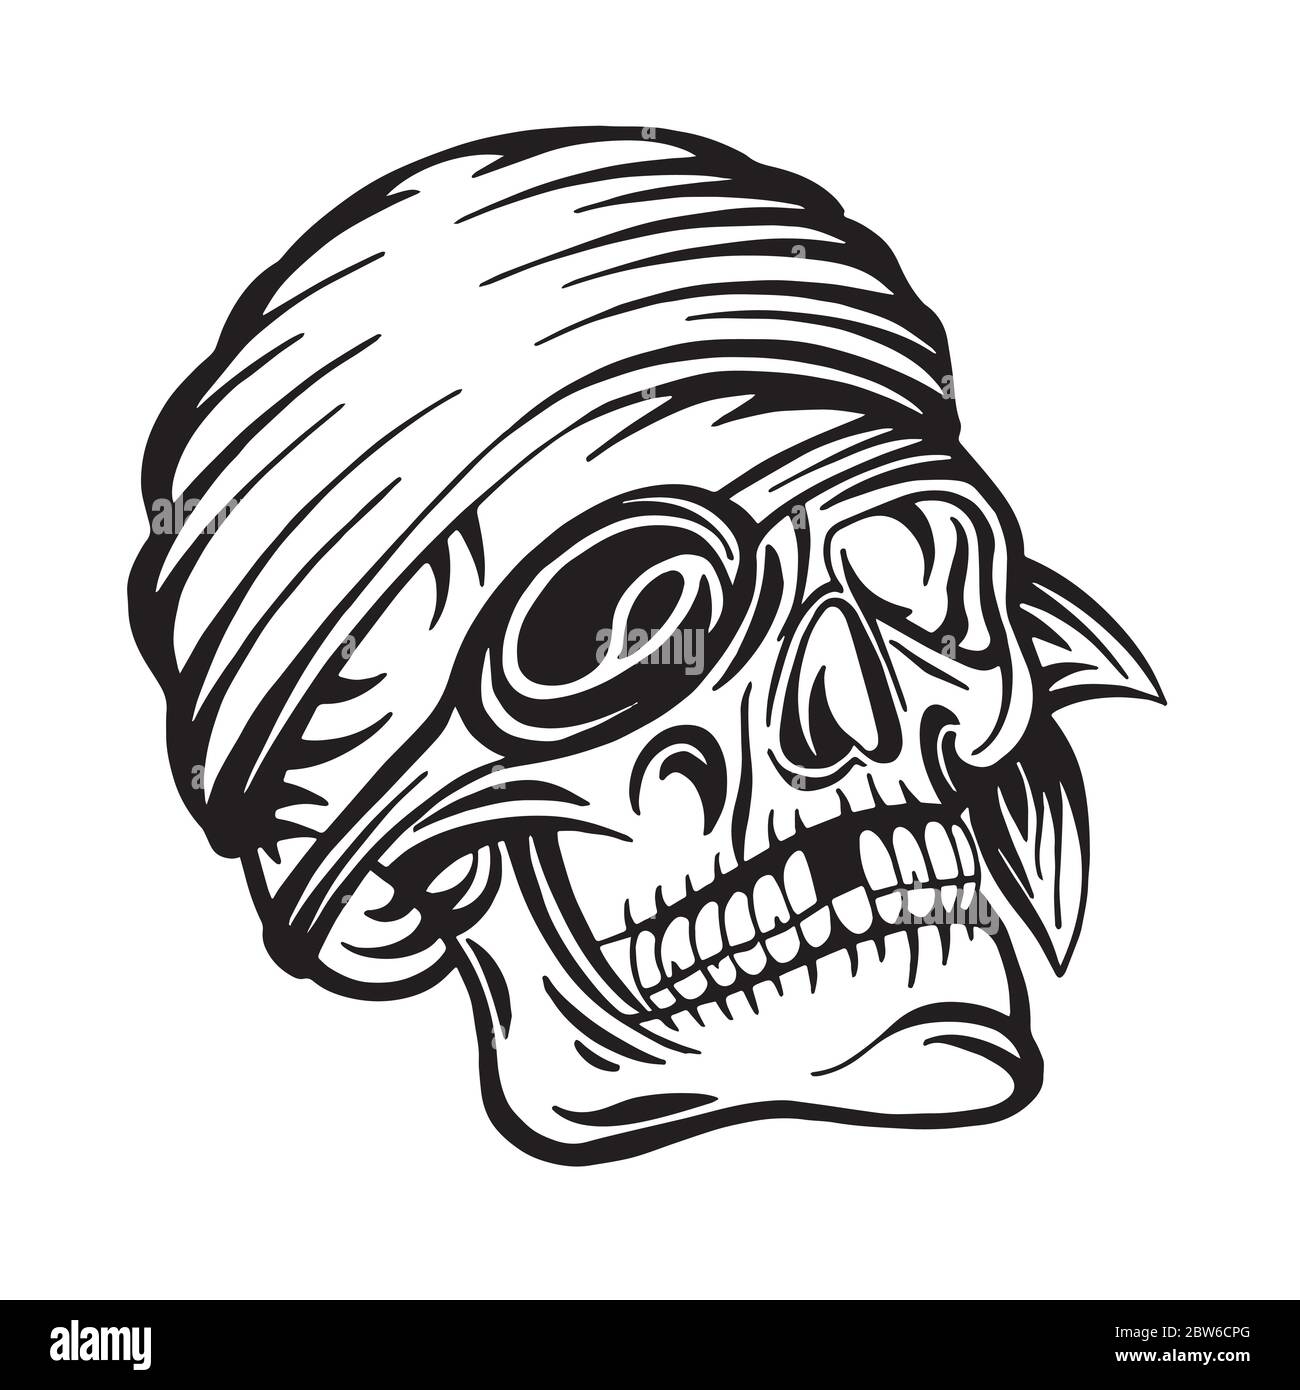 Schädel. Pirate Schädel Hand gezeichnet Vektor Illustration. Totenkopf mit  Augenfleck und Stirnband Skizze Zeichnung. Teil des Sets Stock-Vektorgrafik  - Alamy